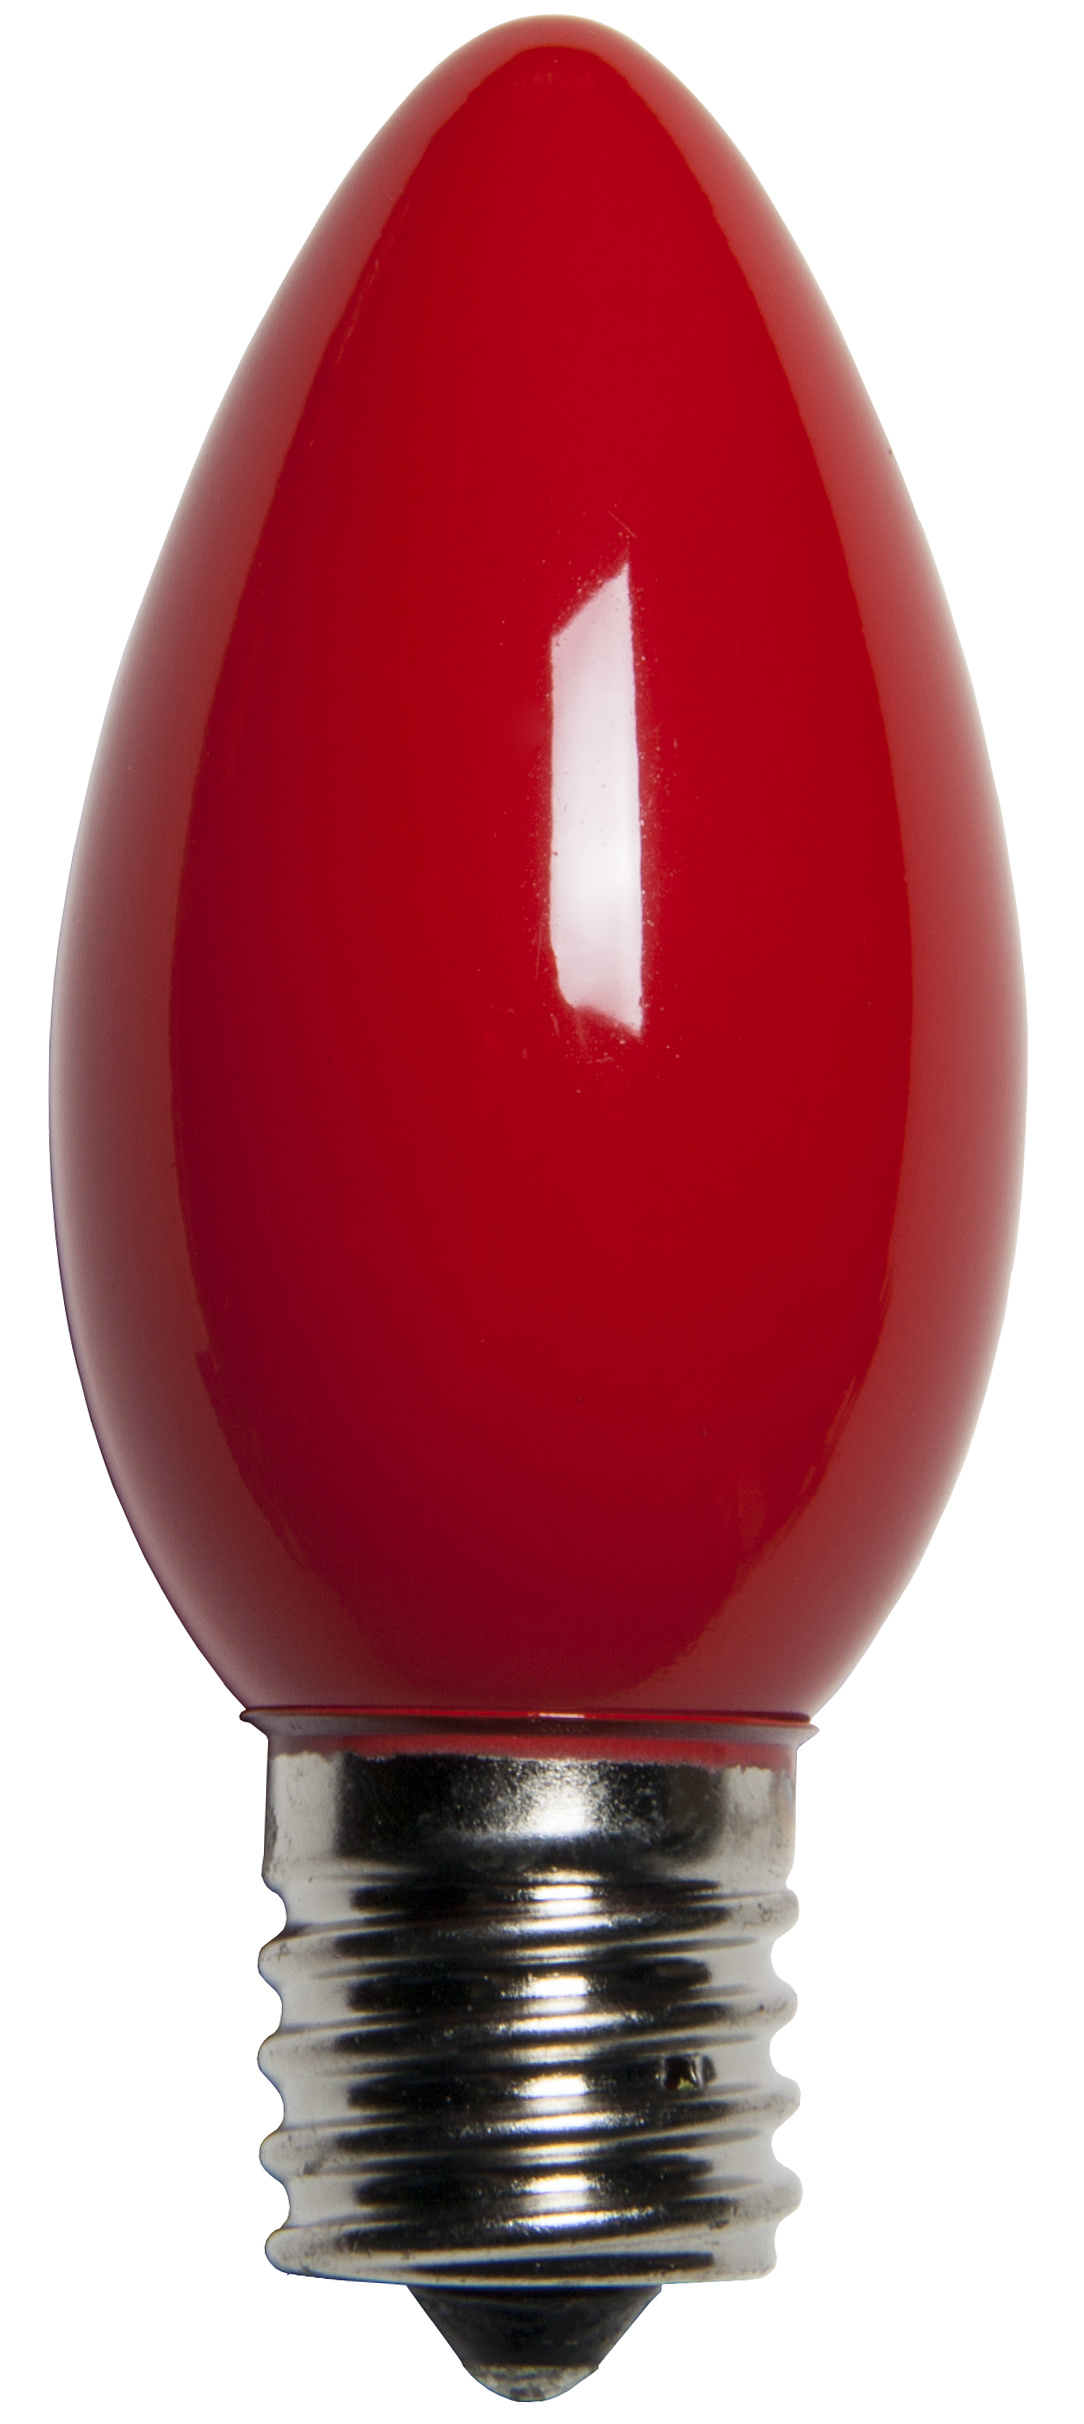 C9 Christmas Light Bulb - C9 Red Christmas Light Bulbs, Opaque